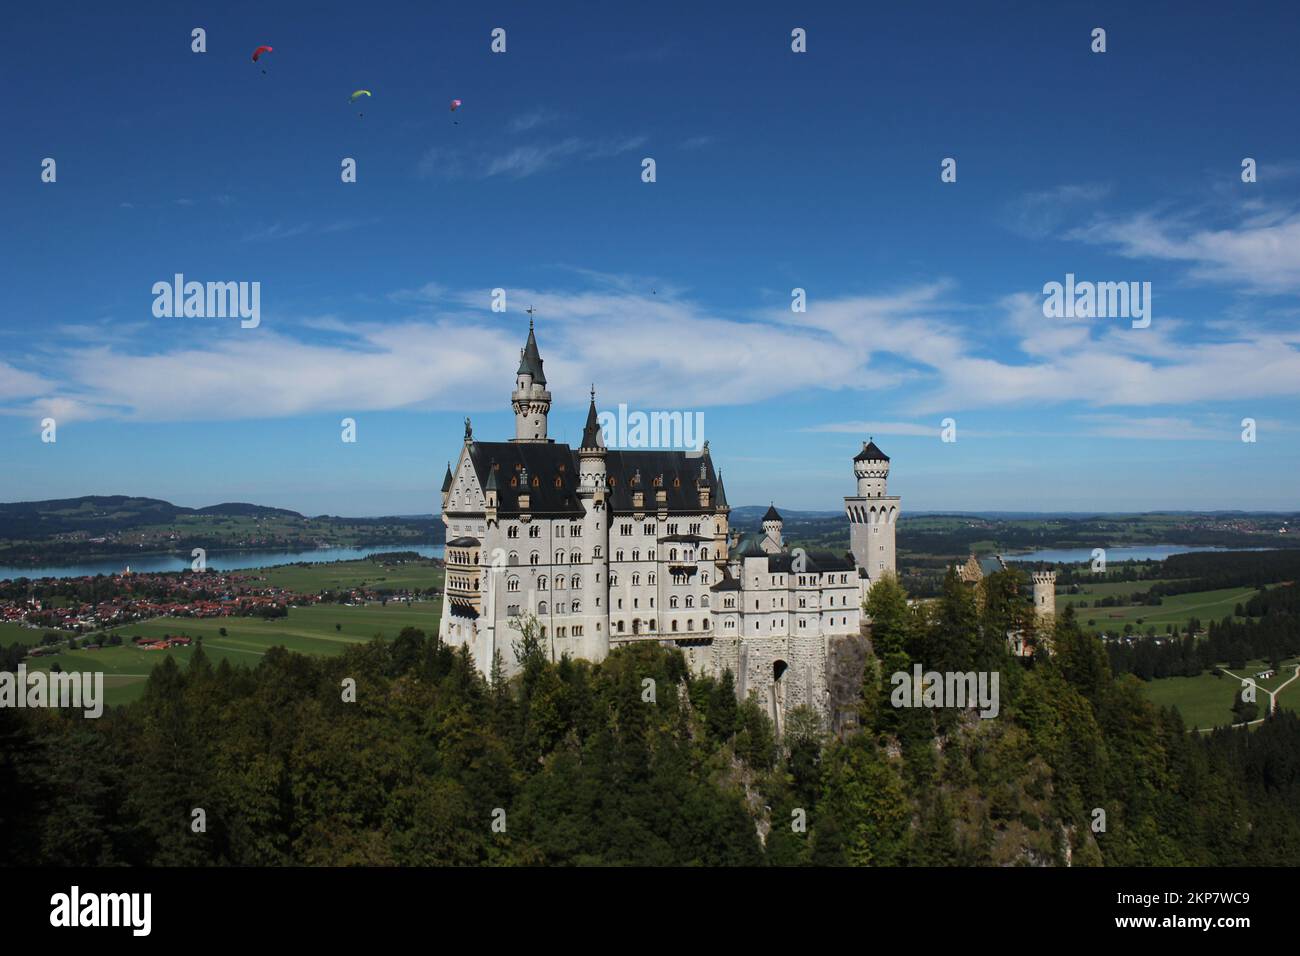 Le château de Neuschwanstein entouré d'arbres avec un ciel bleu nuageux Banque D'Images